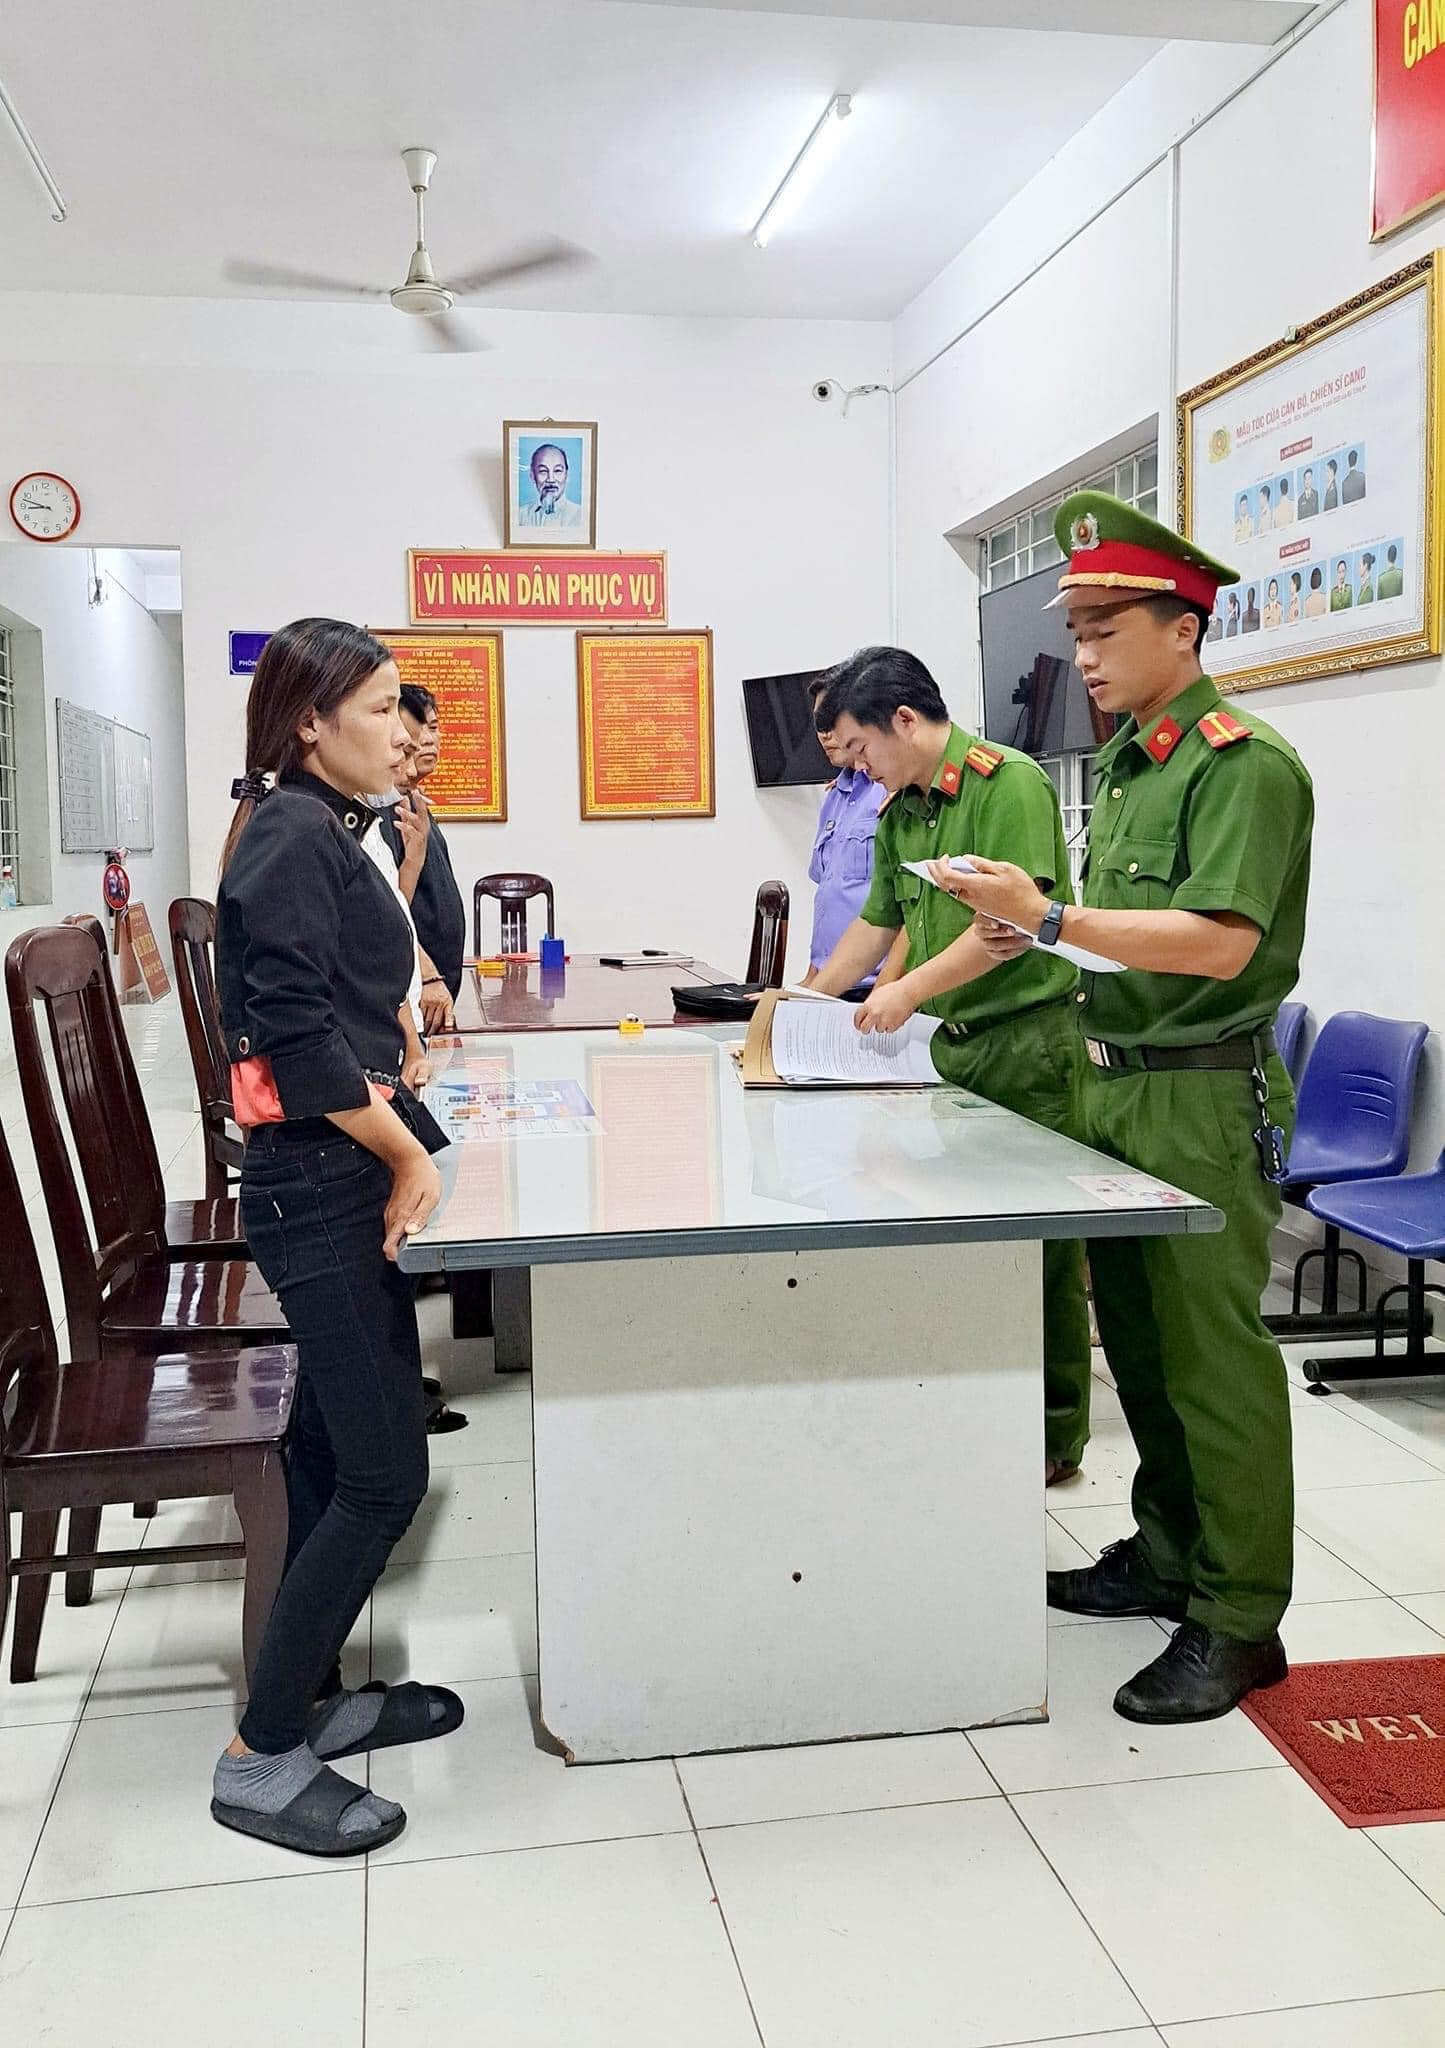 Cơ quan Cảnh sát điều tra Công an huyện Tây Hòa (tỉnh Phú Yên) thông báo ai là bị hại của Phạm Thị Bích Hằng liên hệ để được hướng dẫn, giải quyết.